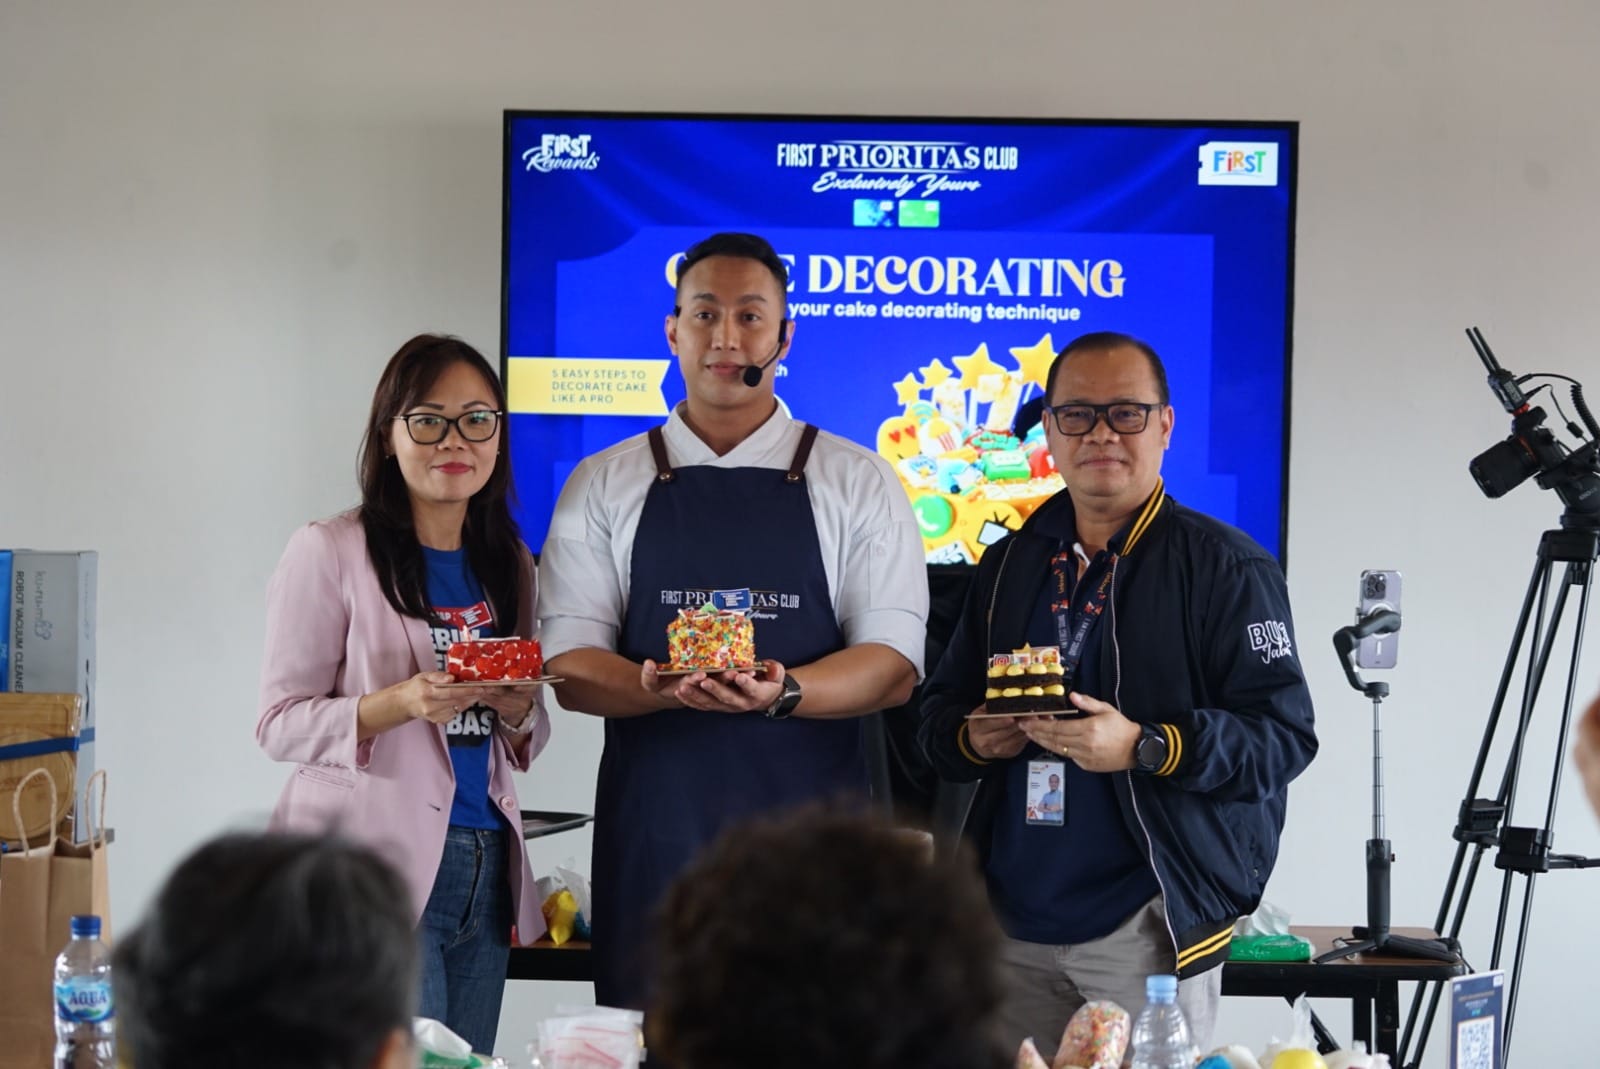 First Media Hadirkan First Rewards di Kota Bandung untuk Pertama Kalinya lewat Aktivitas Cake Decorating Class!